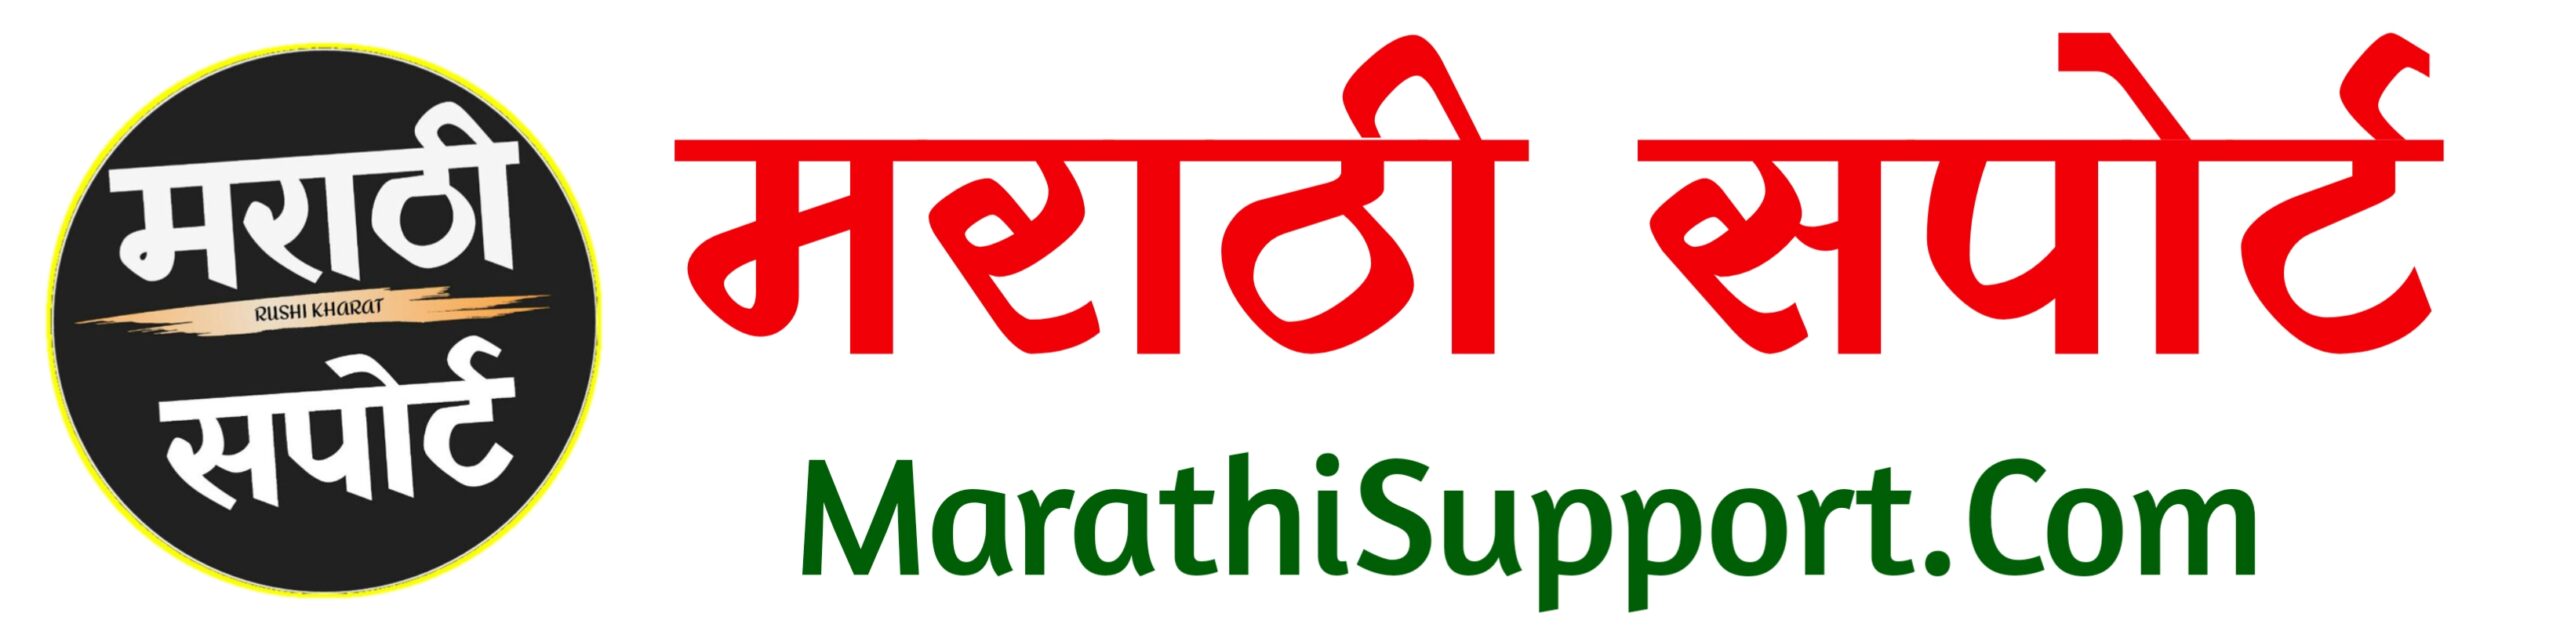 Marathi Support